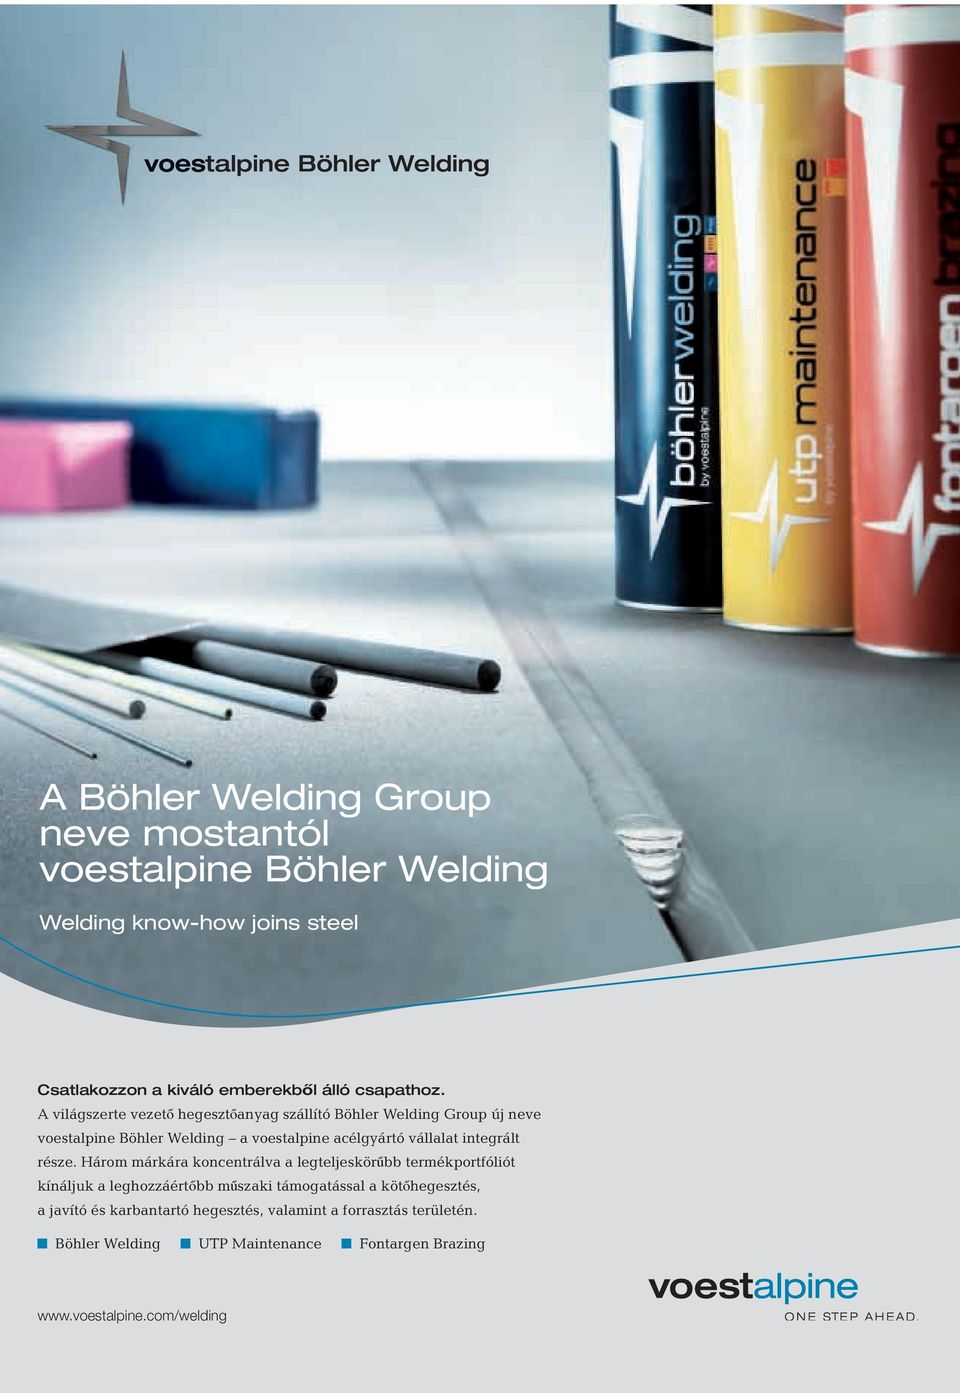 A világszerte vezet hegeszt anyag szállító Böhler Welding Group új neve voestalpine Böhler Welding a voestalpine acélgyártó vállalat